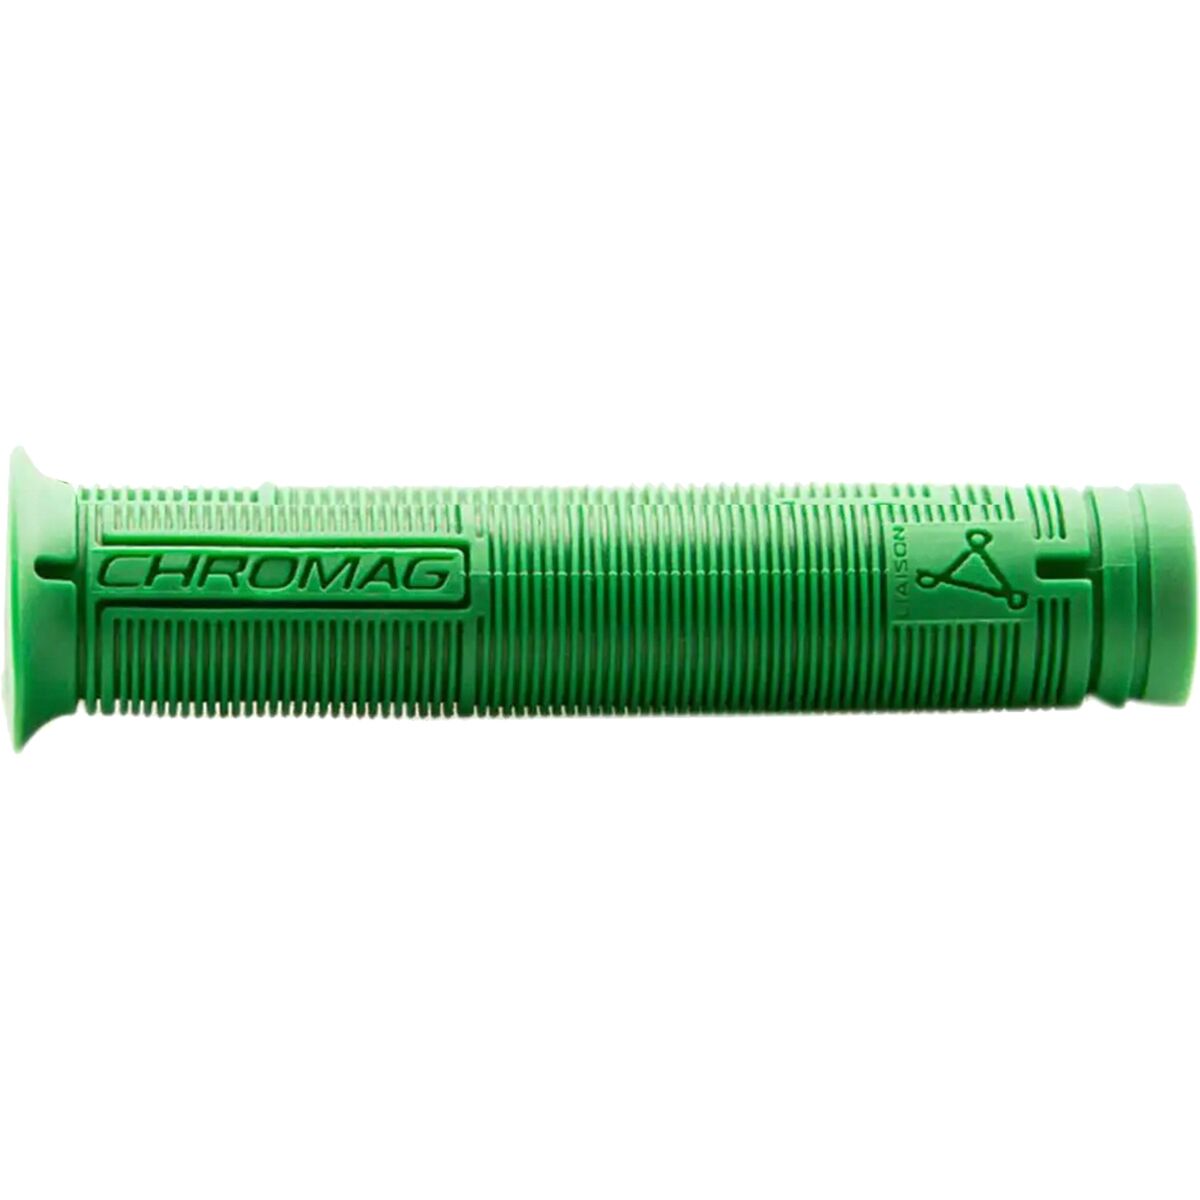 Chromag Wax Grips Green, Pair -  170-004-004